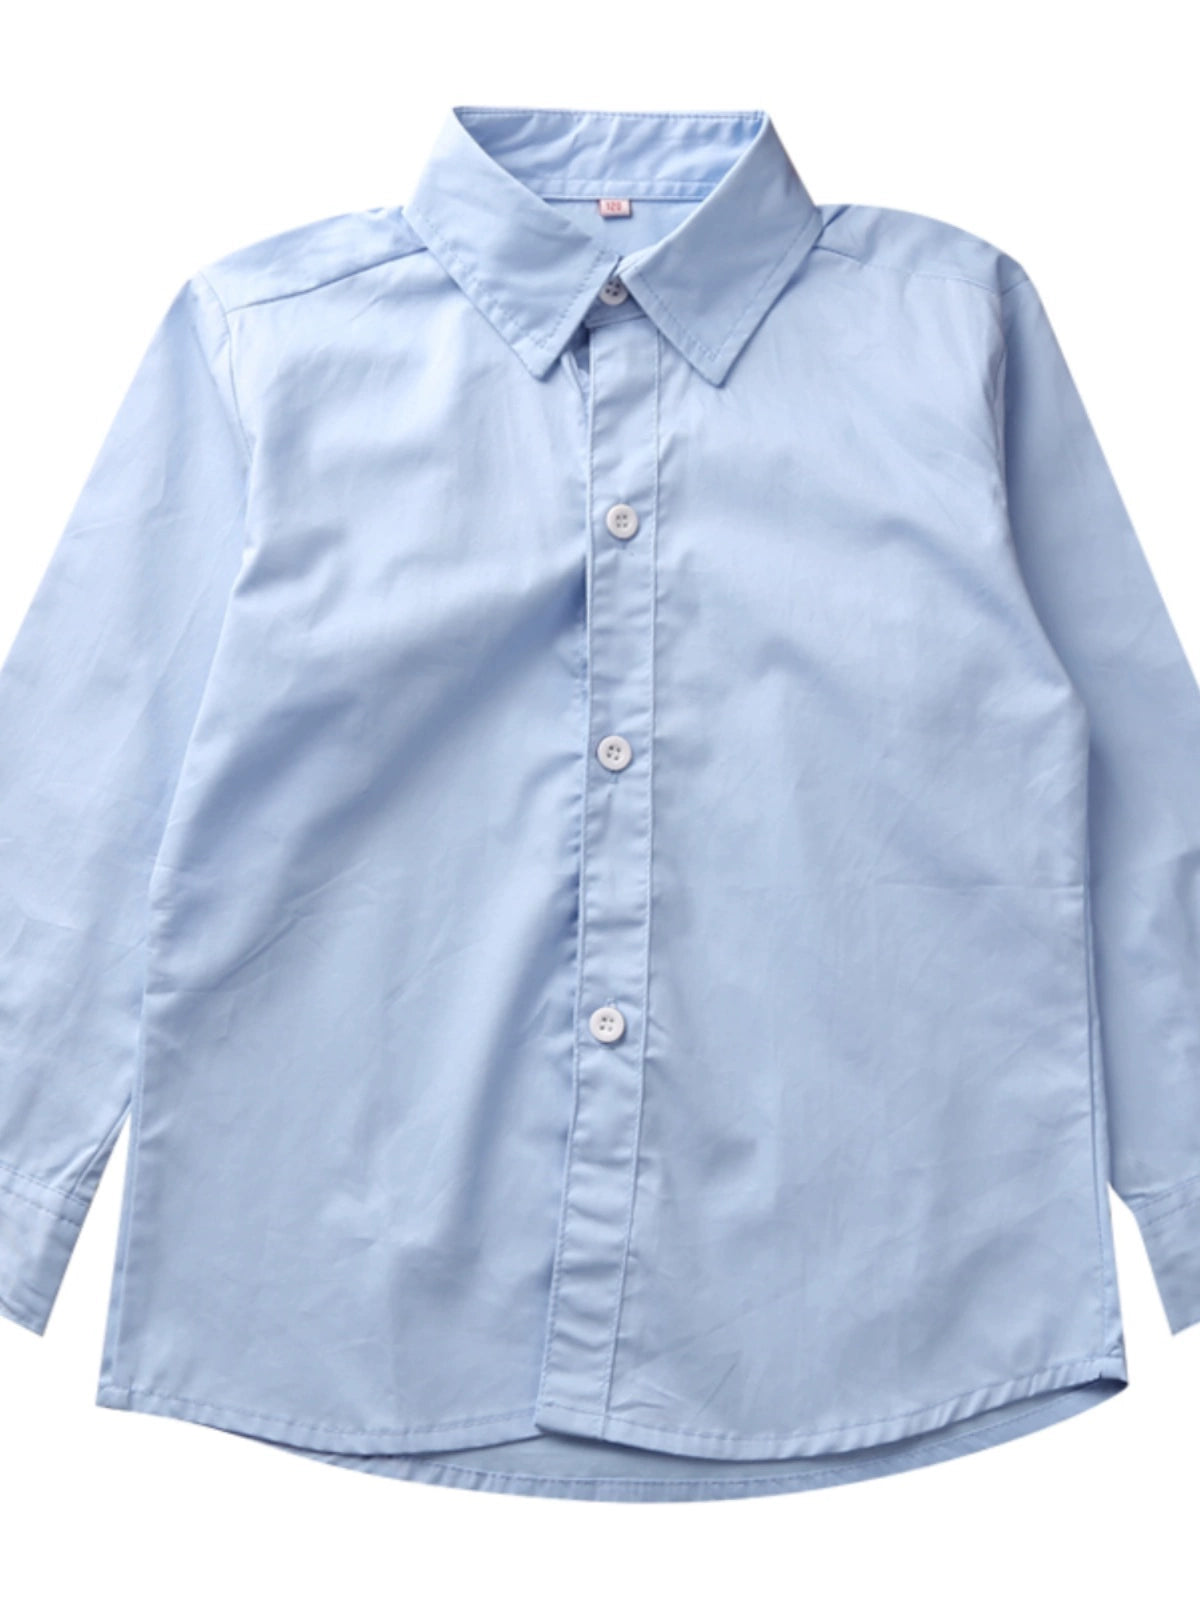 Children's Blue Cotton Lapel Shirt